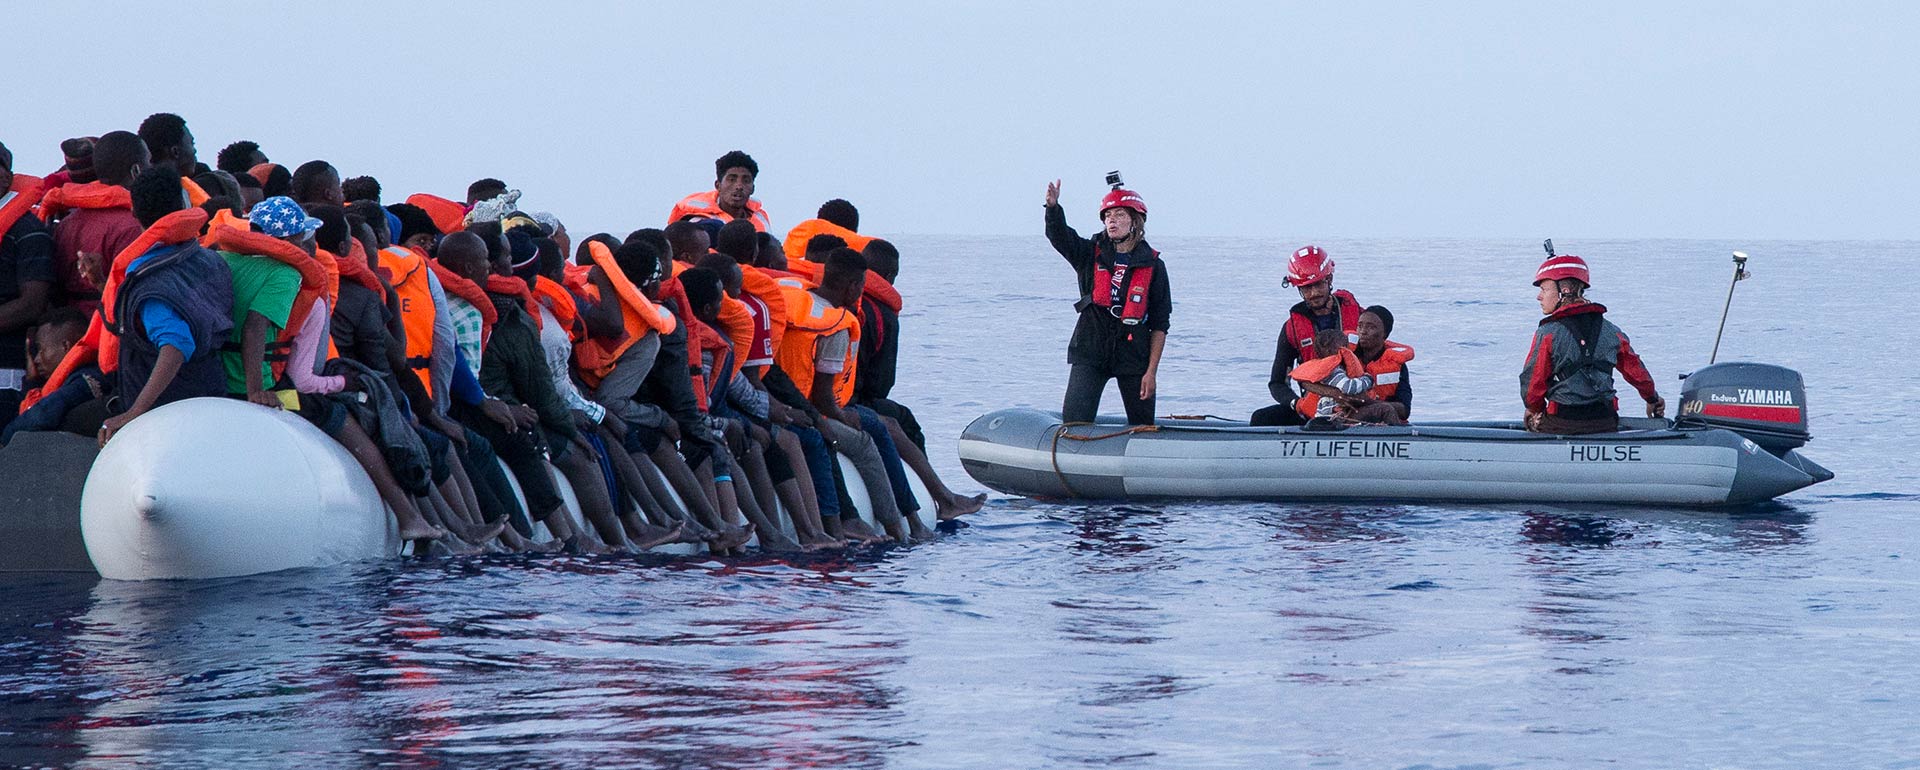 Boot mit vielen Menschen auf der linken Seite, daneben ein kleineres Motorboot mit Mission Lifeline-Crewmitgliedern, die mit Menschen auf dem zweiten Boot kommunizieren und eine Frau mit Kind an Bord haben